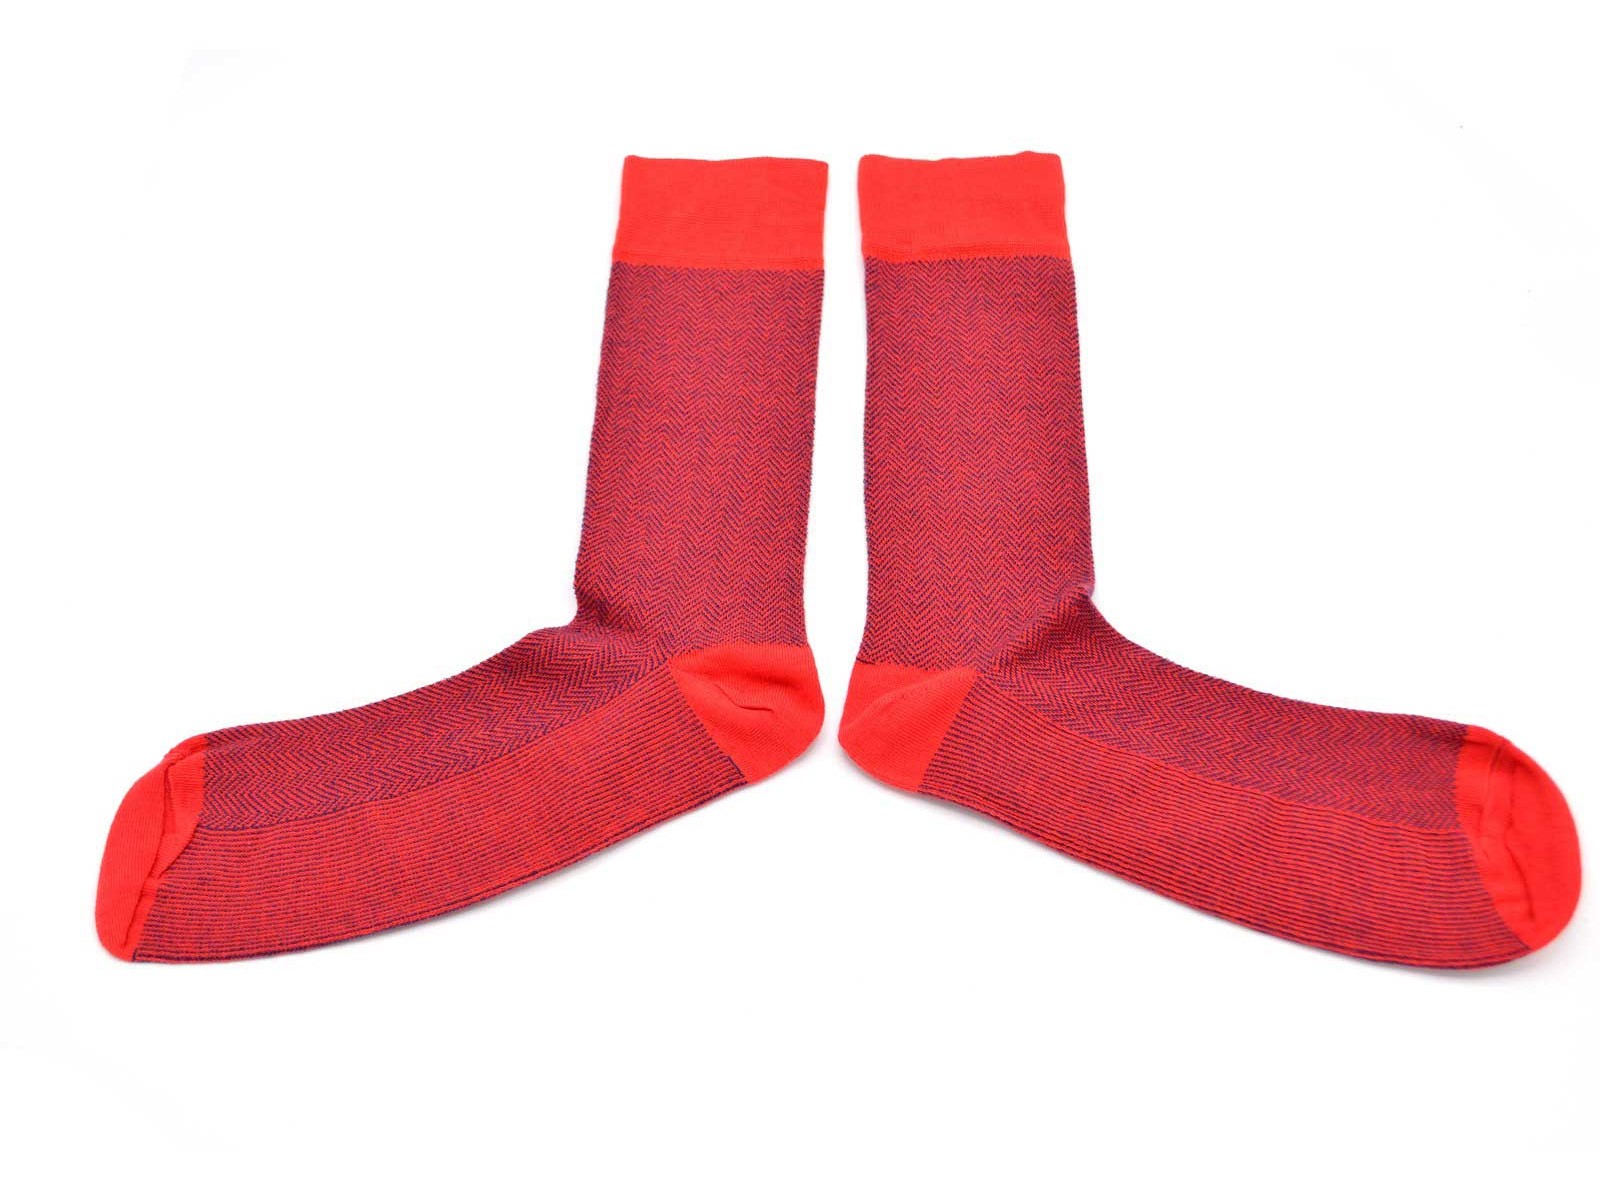 chaussettes-fantaisie-hommes-femmes-en-coton-rouges-à-motifs-chevrons-bleu-marine-remaillées-à-la-main